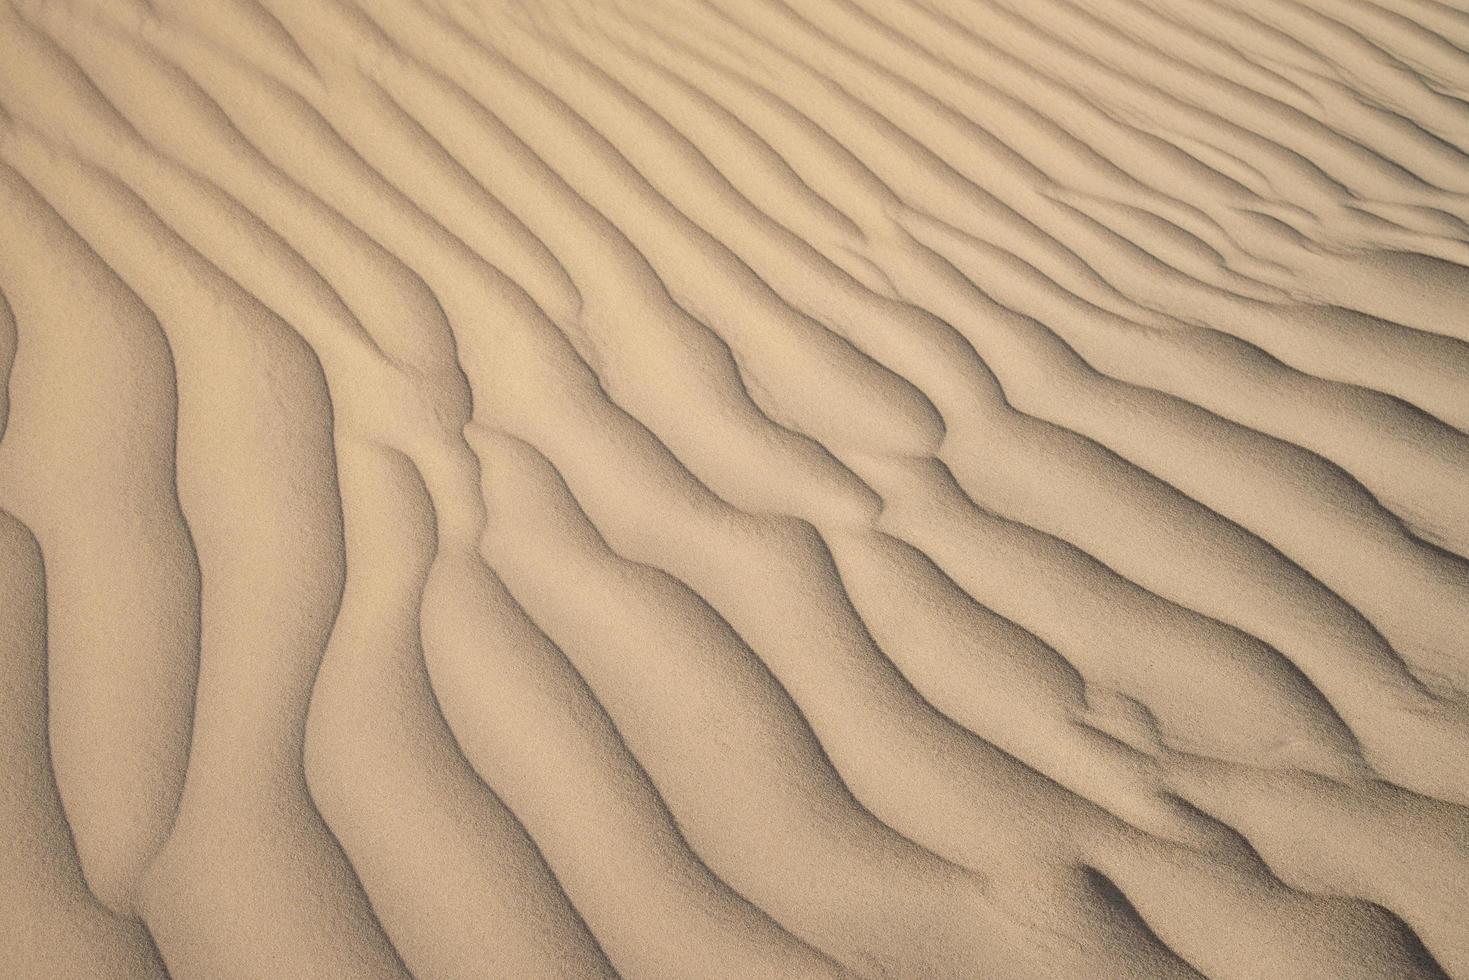 Wellen in der Wüste foto